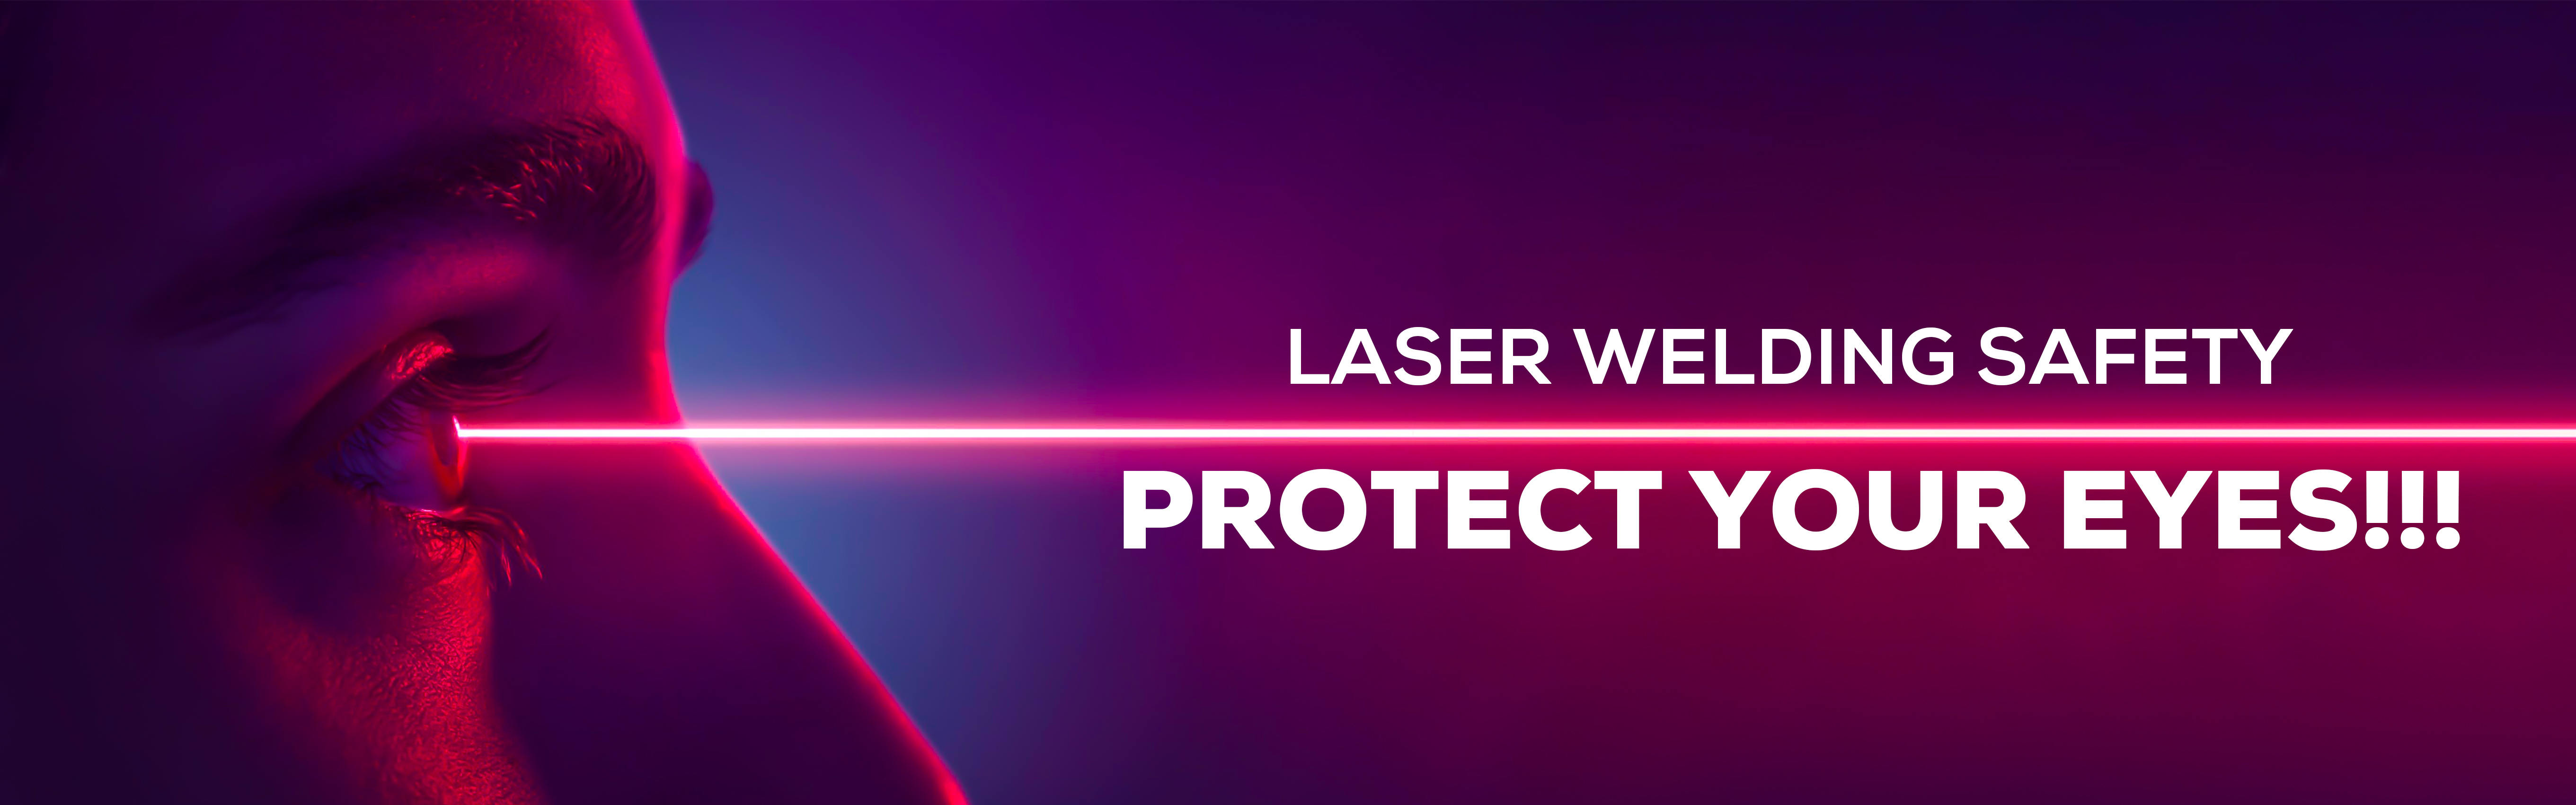 безопасность лазерной сварки